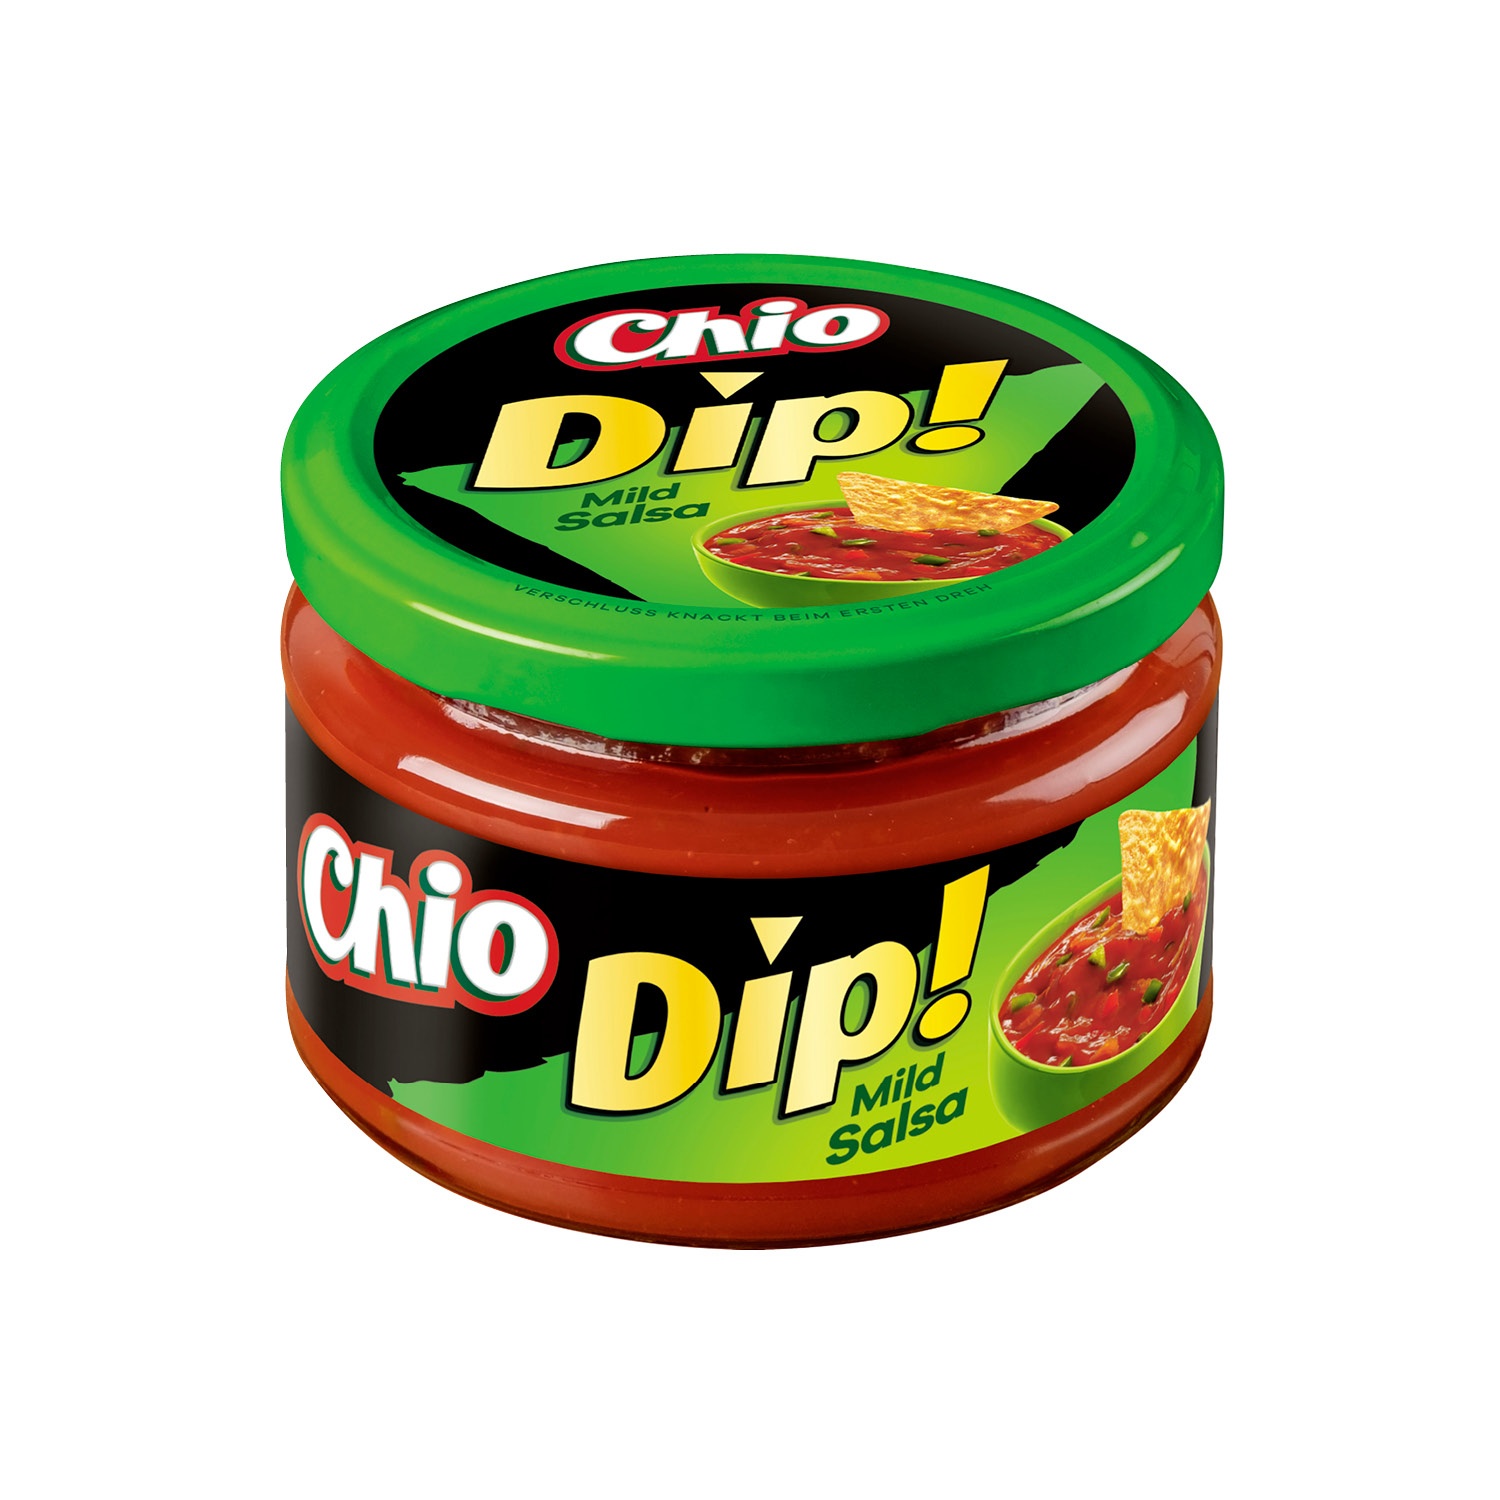 Chio dip mild salsa - Der Testsieger unter allen Produkten